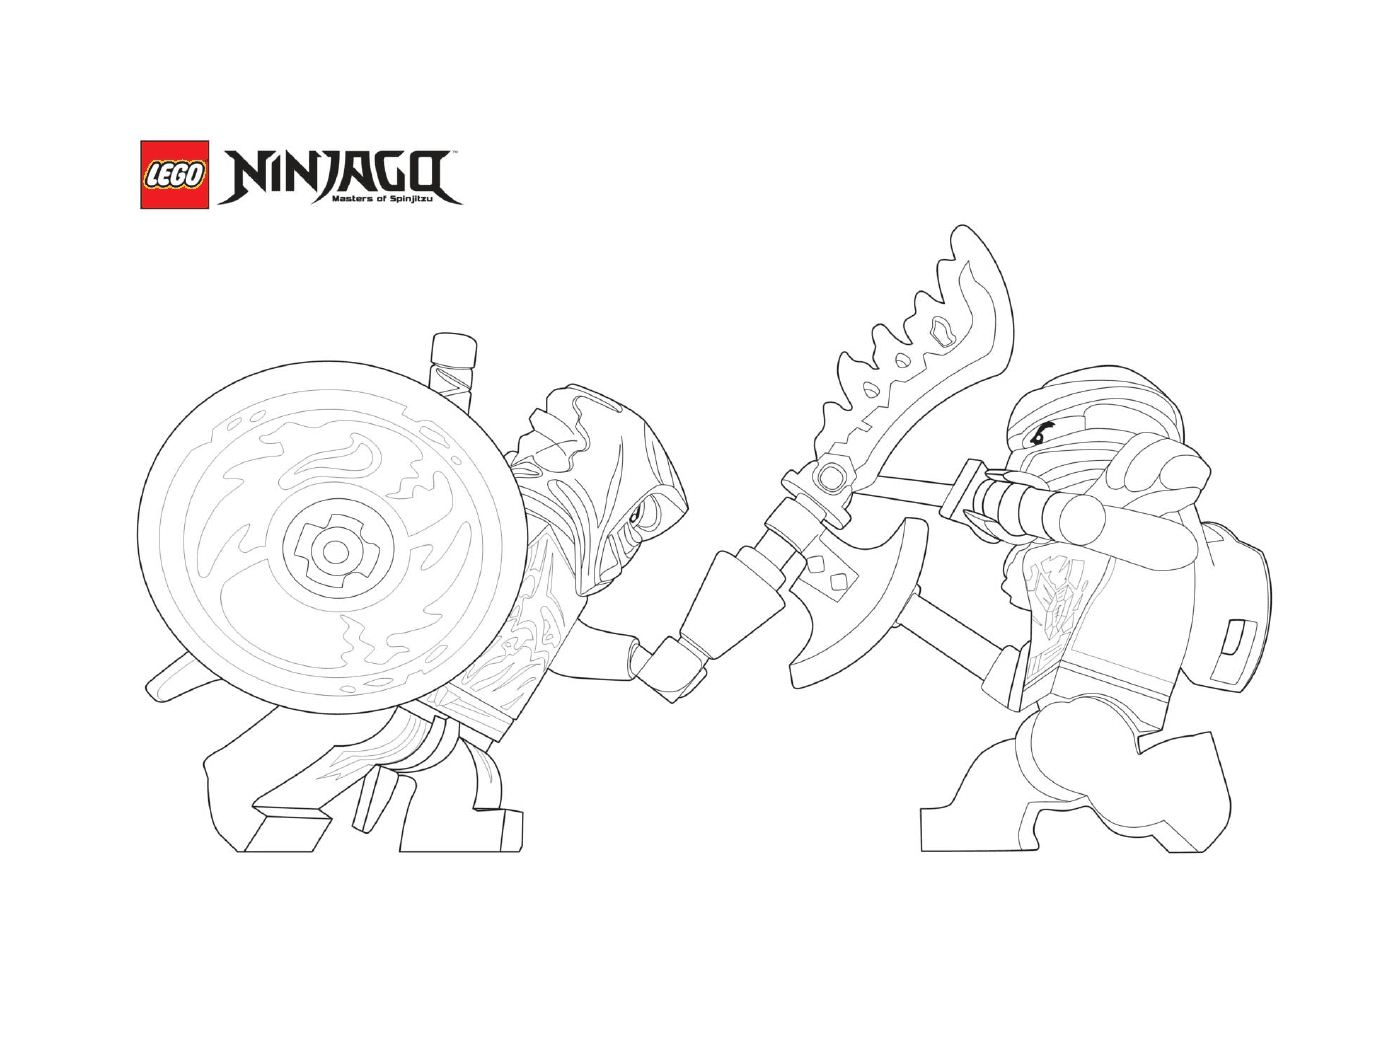   Deux ninjagos en mode combat 